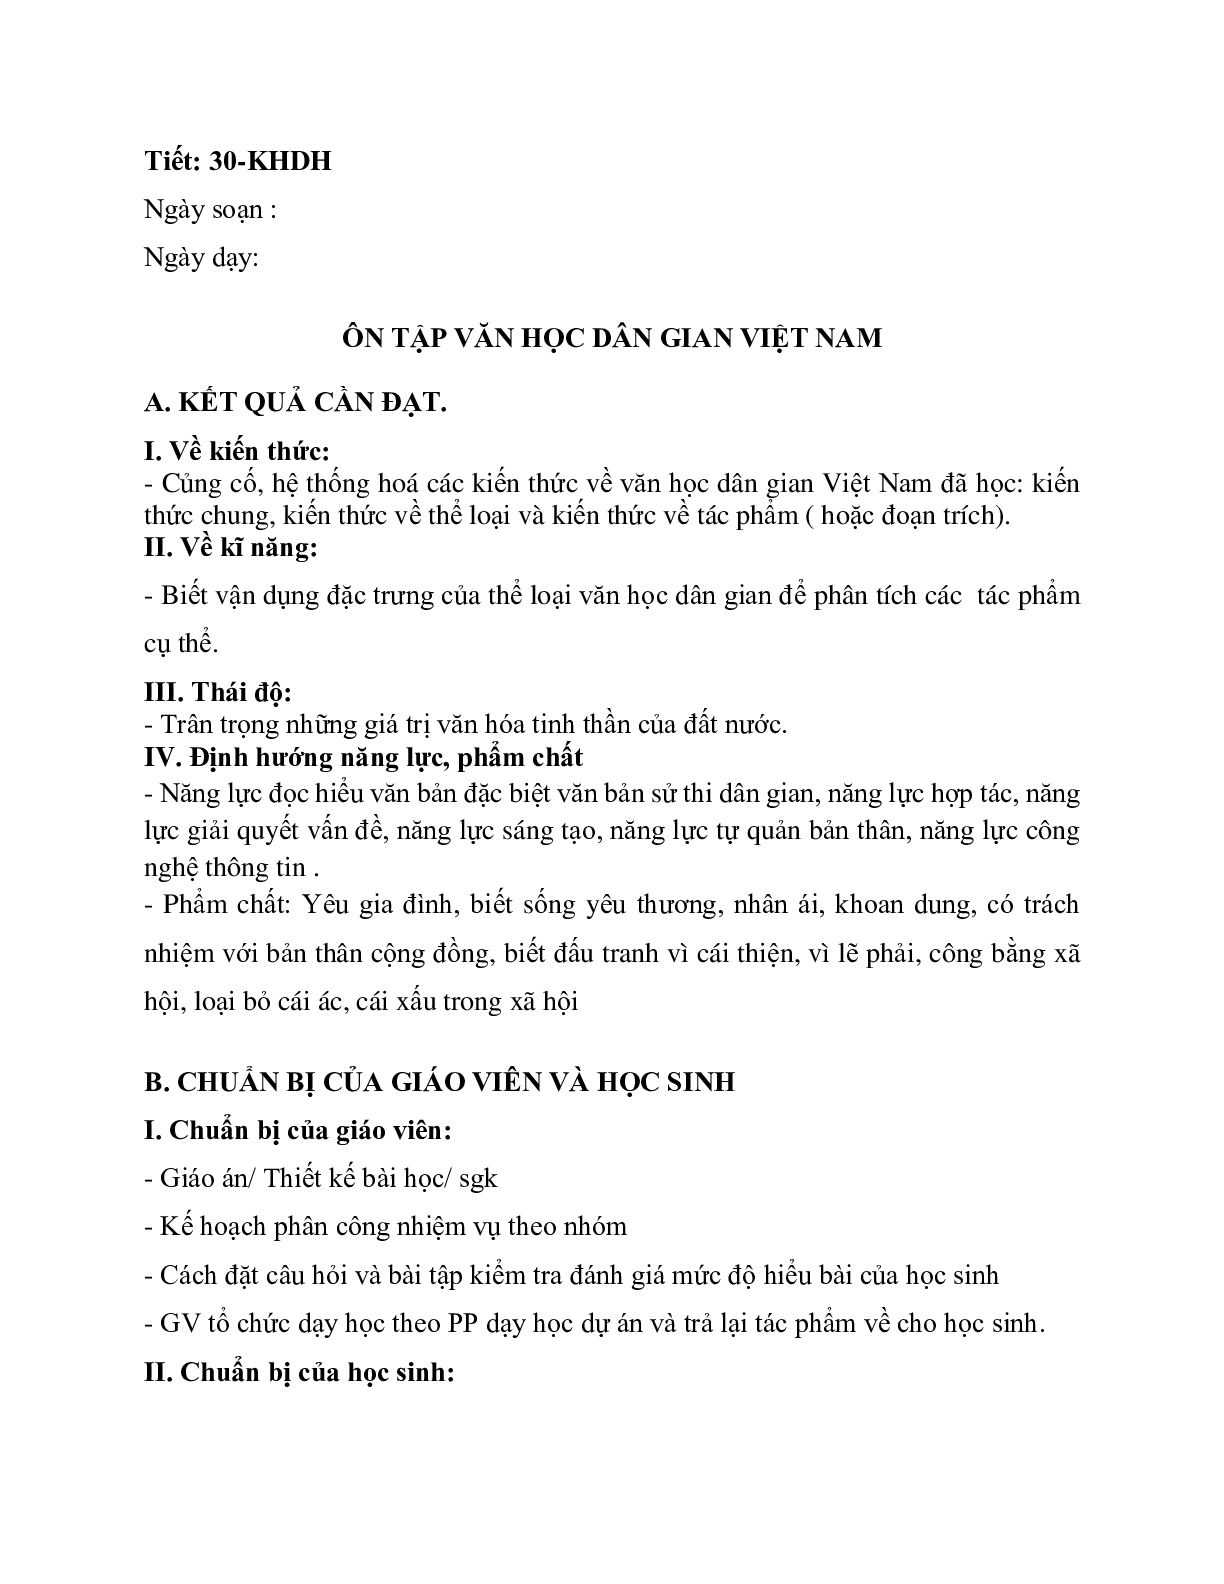 Giáo án ngữ văn lớp 10 Tiết 30: Ôn tập văn học dân gian Việt Nam (trang 1)